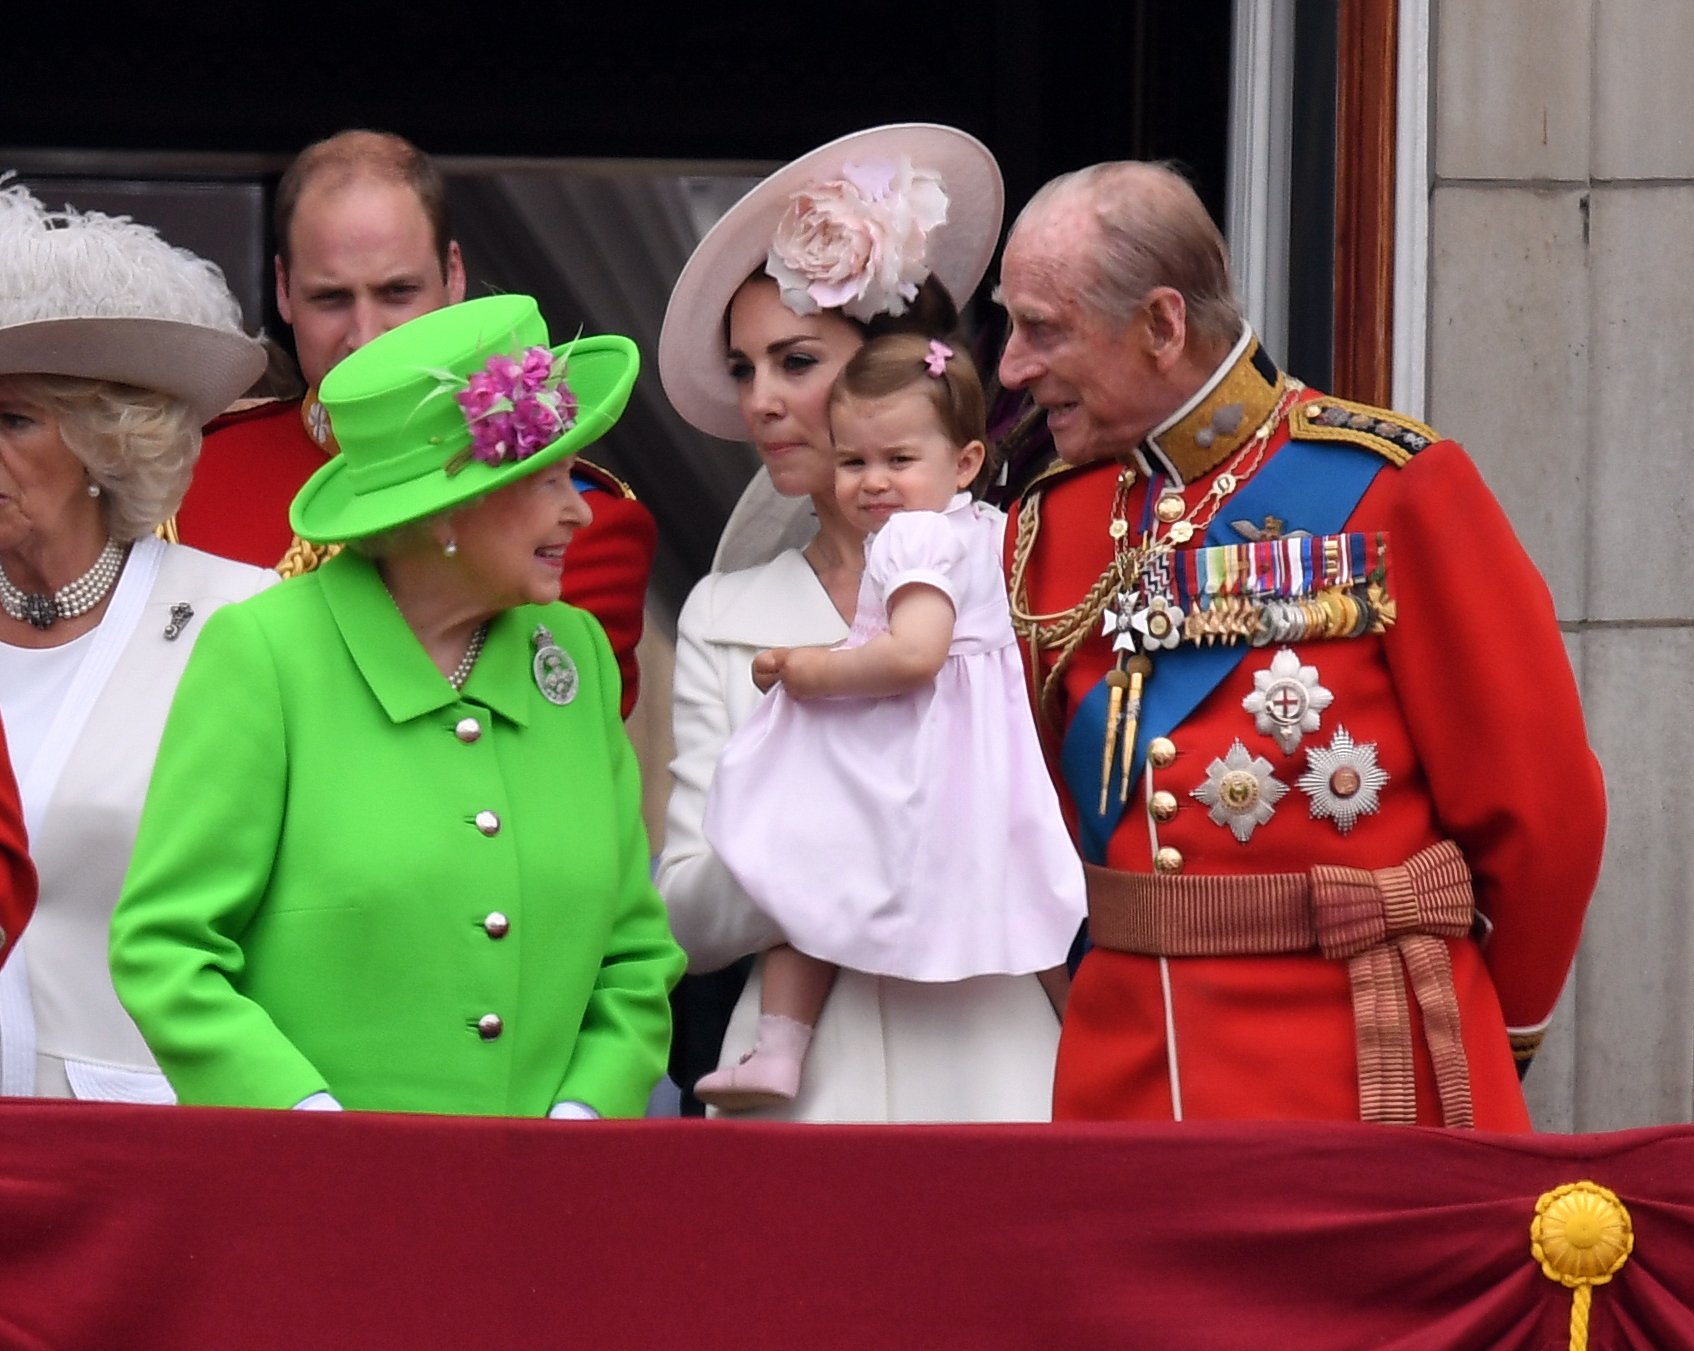 La duquesa Kate, la princesa Charlotte, la reina Isabel II y el príncipe Felipe en el balcón del Palacio de Buckingham después de la ceremonia Trooping the Colour el 11 de junio de 2016 en Londres, Inglaterra. | Foto: Getty Images